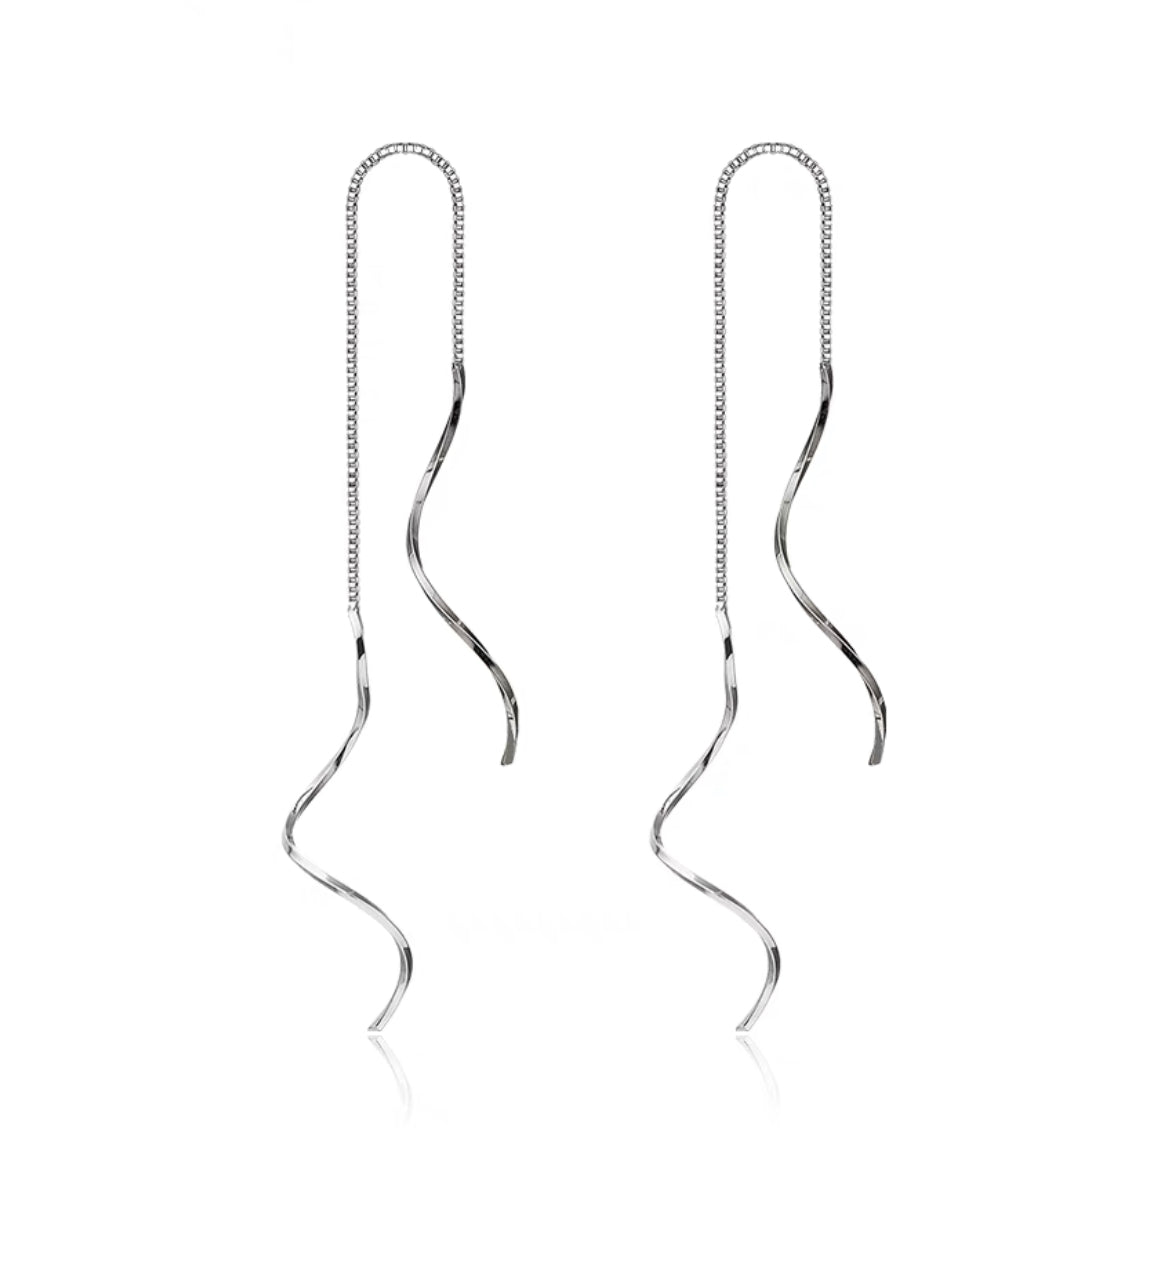 Silver Plated Swirl Thread Earrings